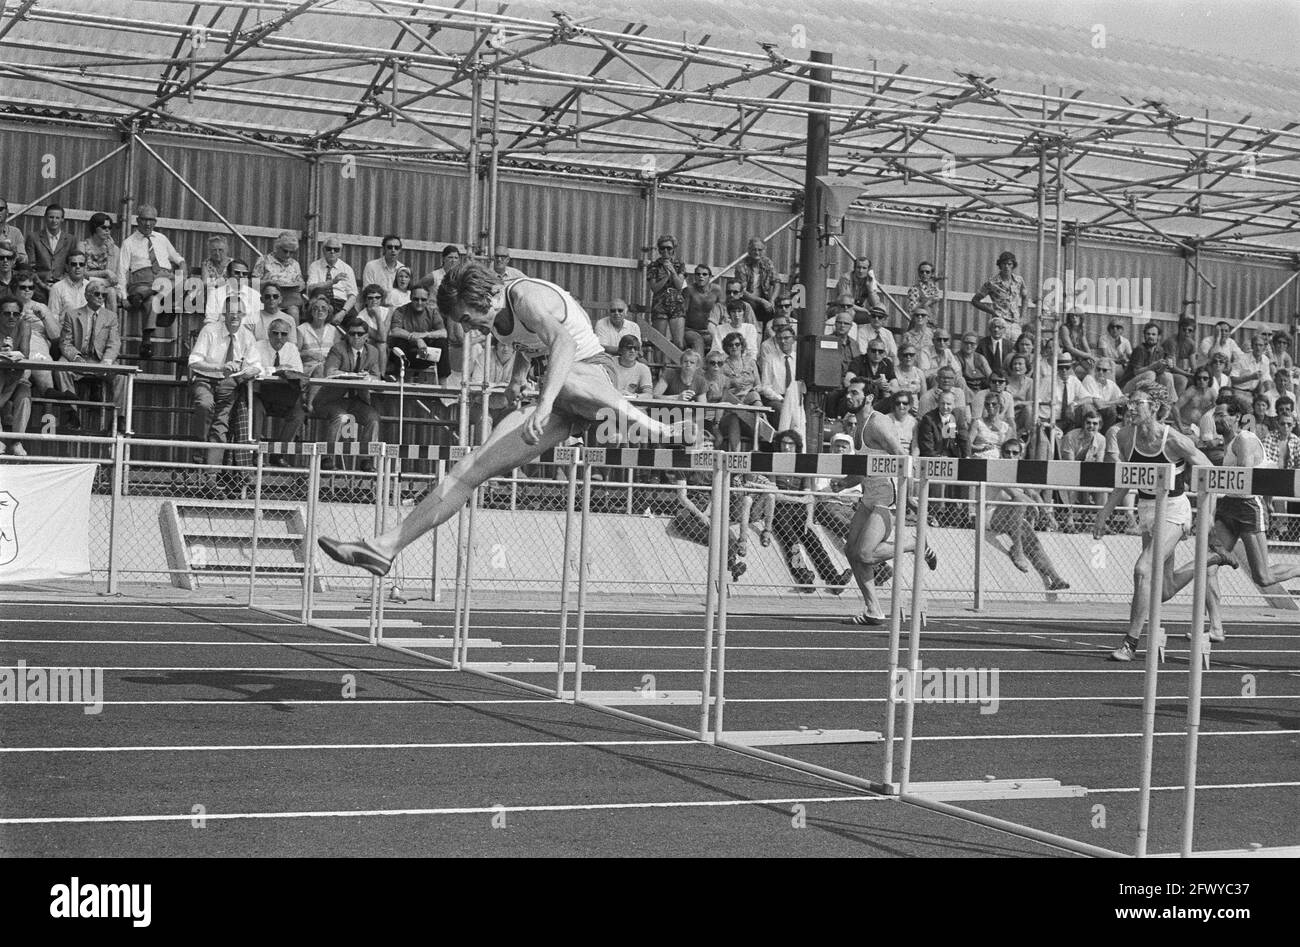 Championnats d'athlétisme Drachten, no 22 H. van Enkhuyz en action, non 23 A. Bouma titre, no 24 Mieke van Doorn Heading, 4 juillet 1971, athlétisme, T. Banque D'Images